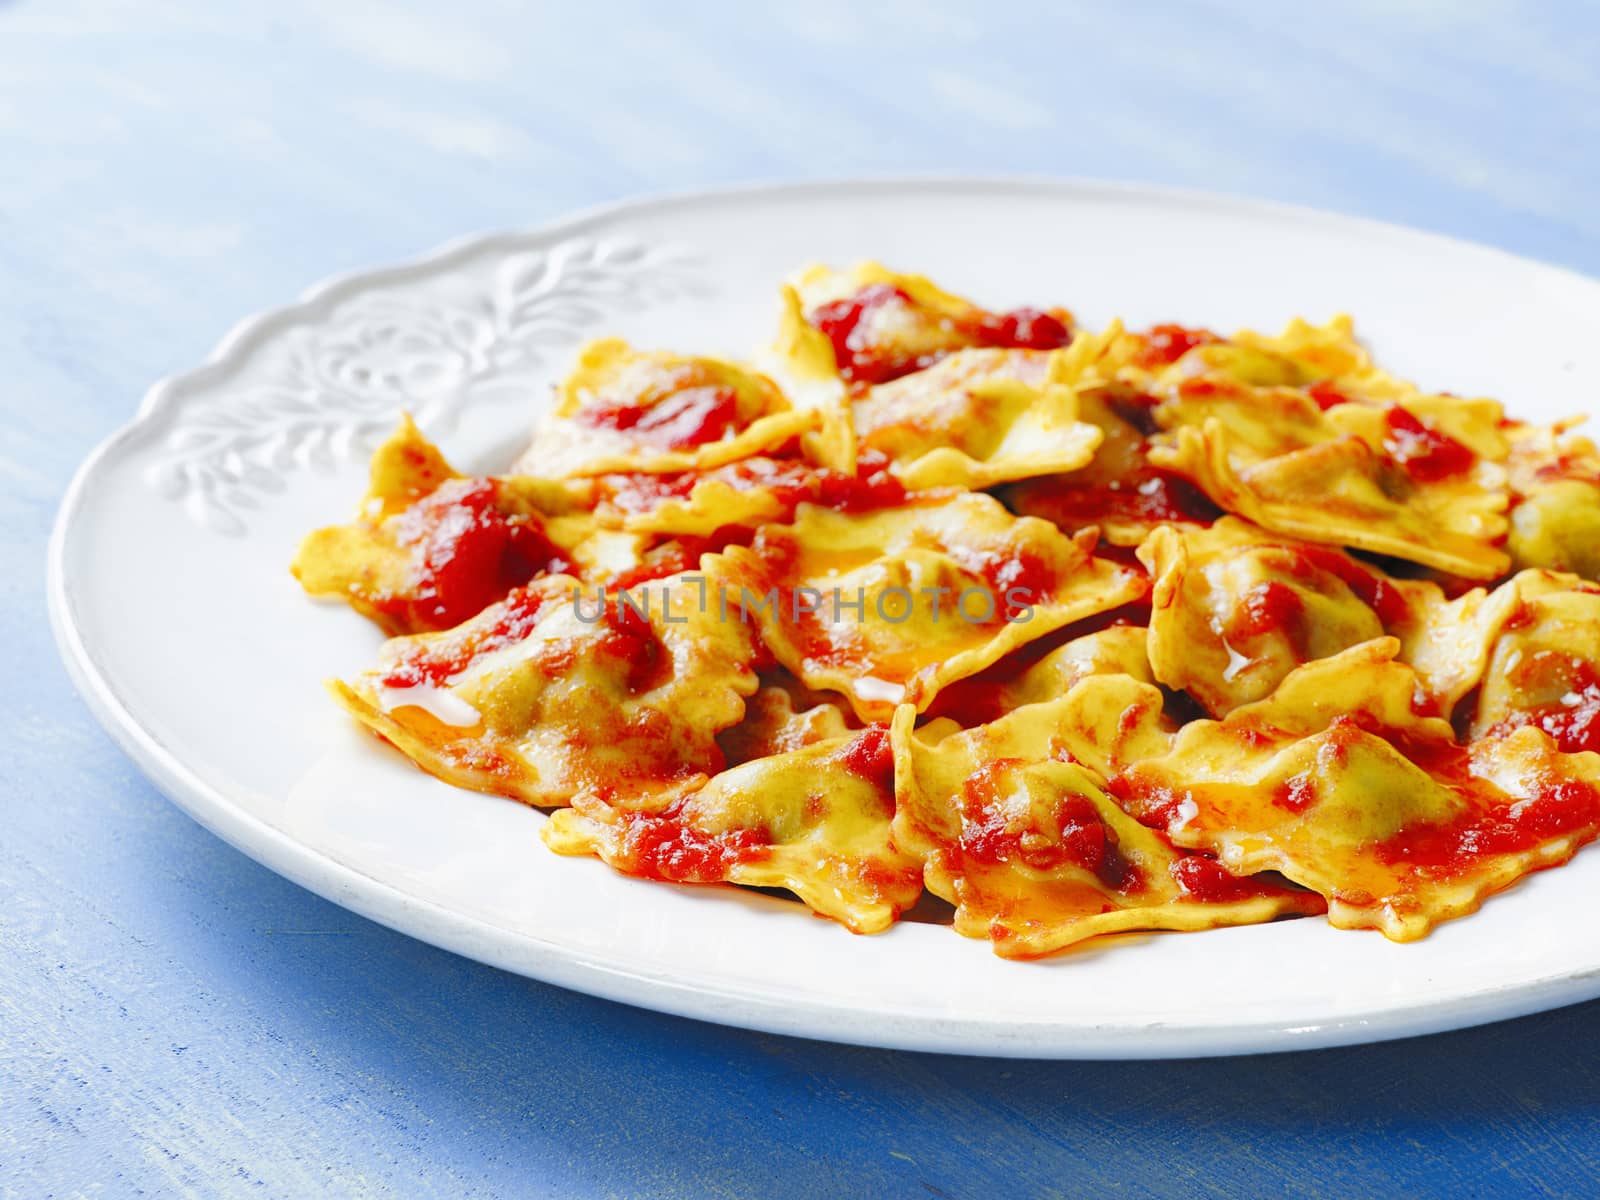 italian ravioli pasta in tomato sauce by zkruger